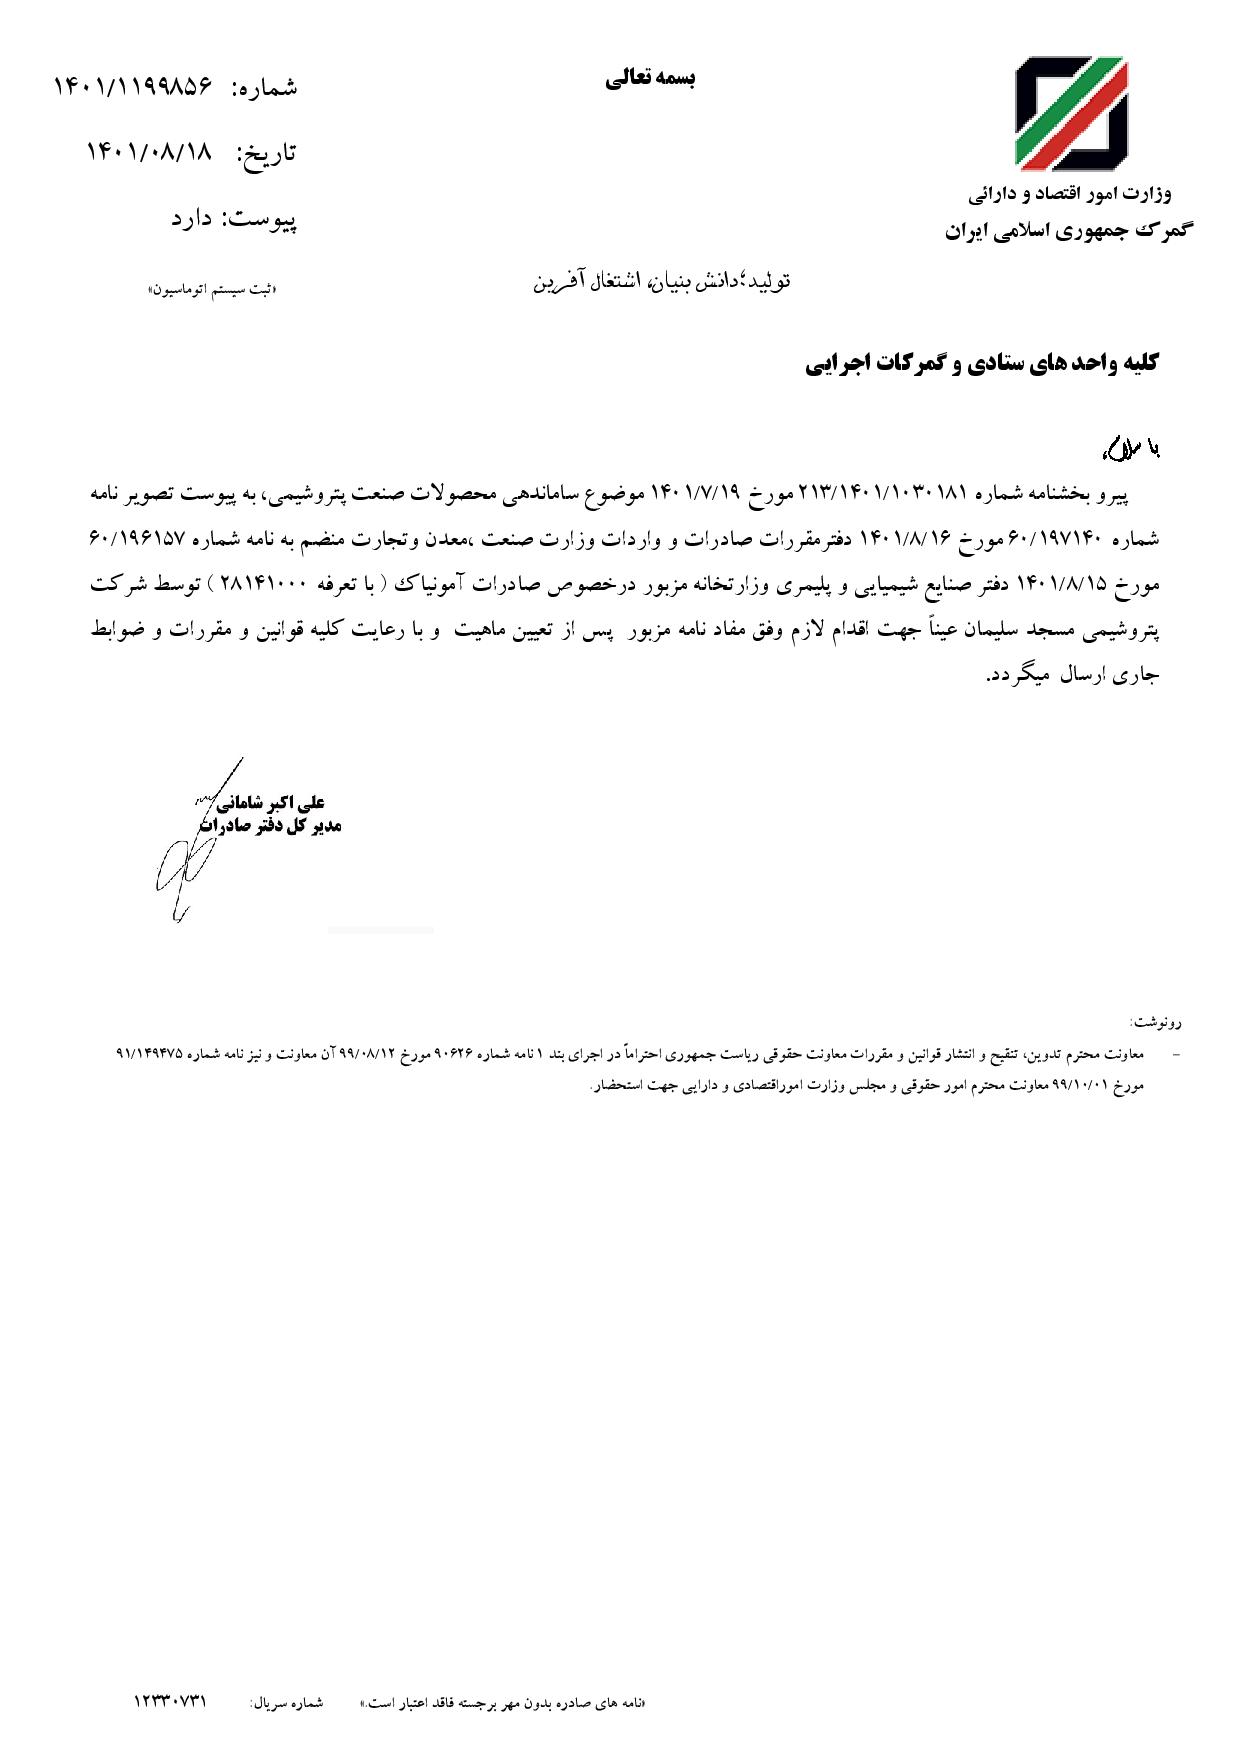 بخشنامه درخصوص صادرات آمونیاک توسط شرکت پتروشیمی مسجد سلیمان ۱۴۰۱/۰۸/۱۸